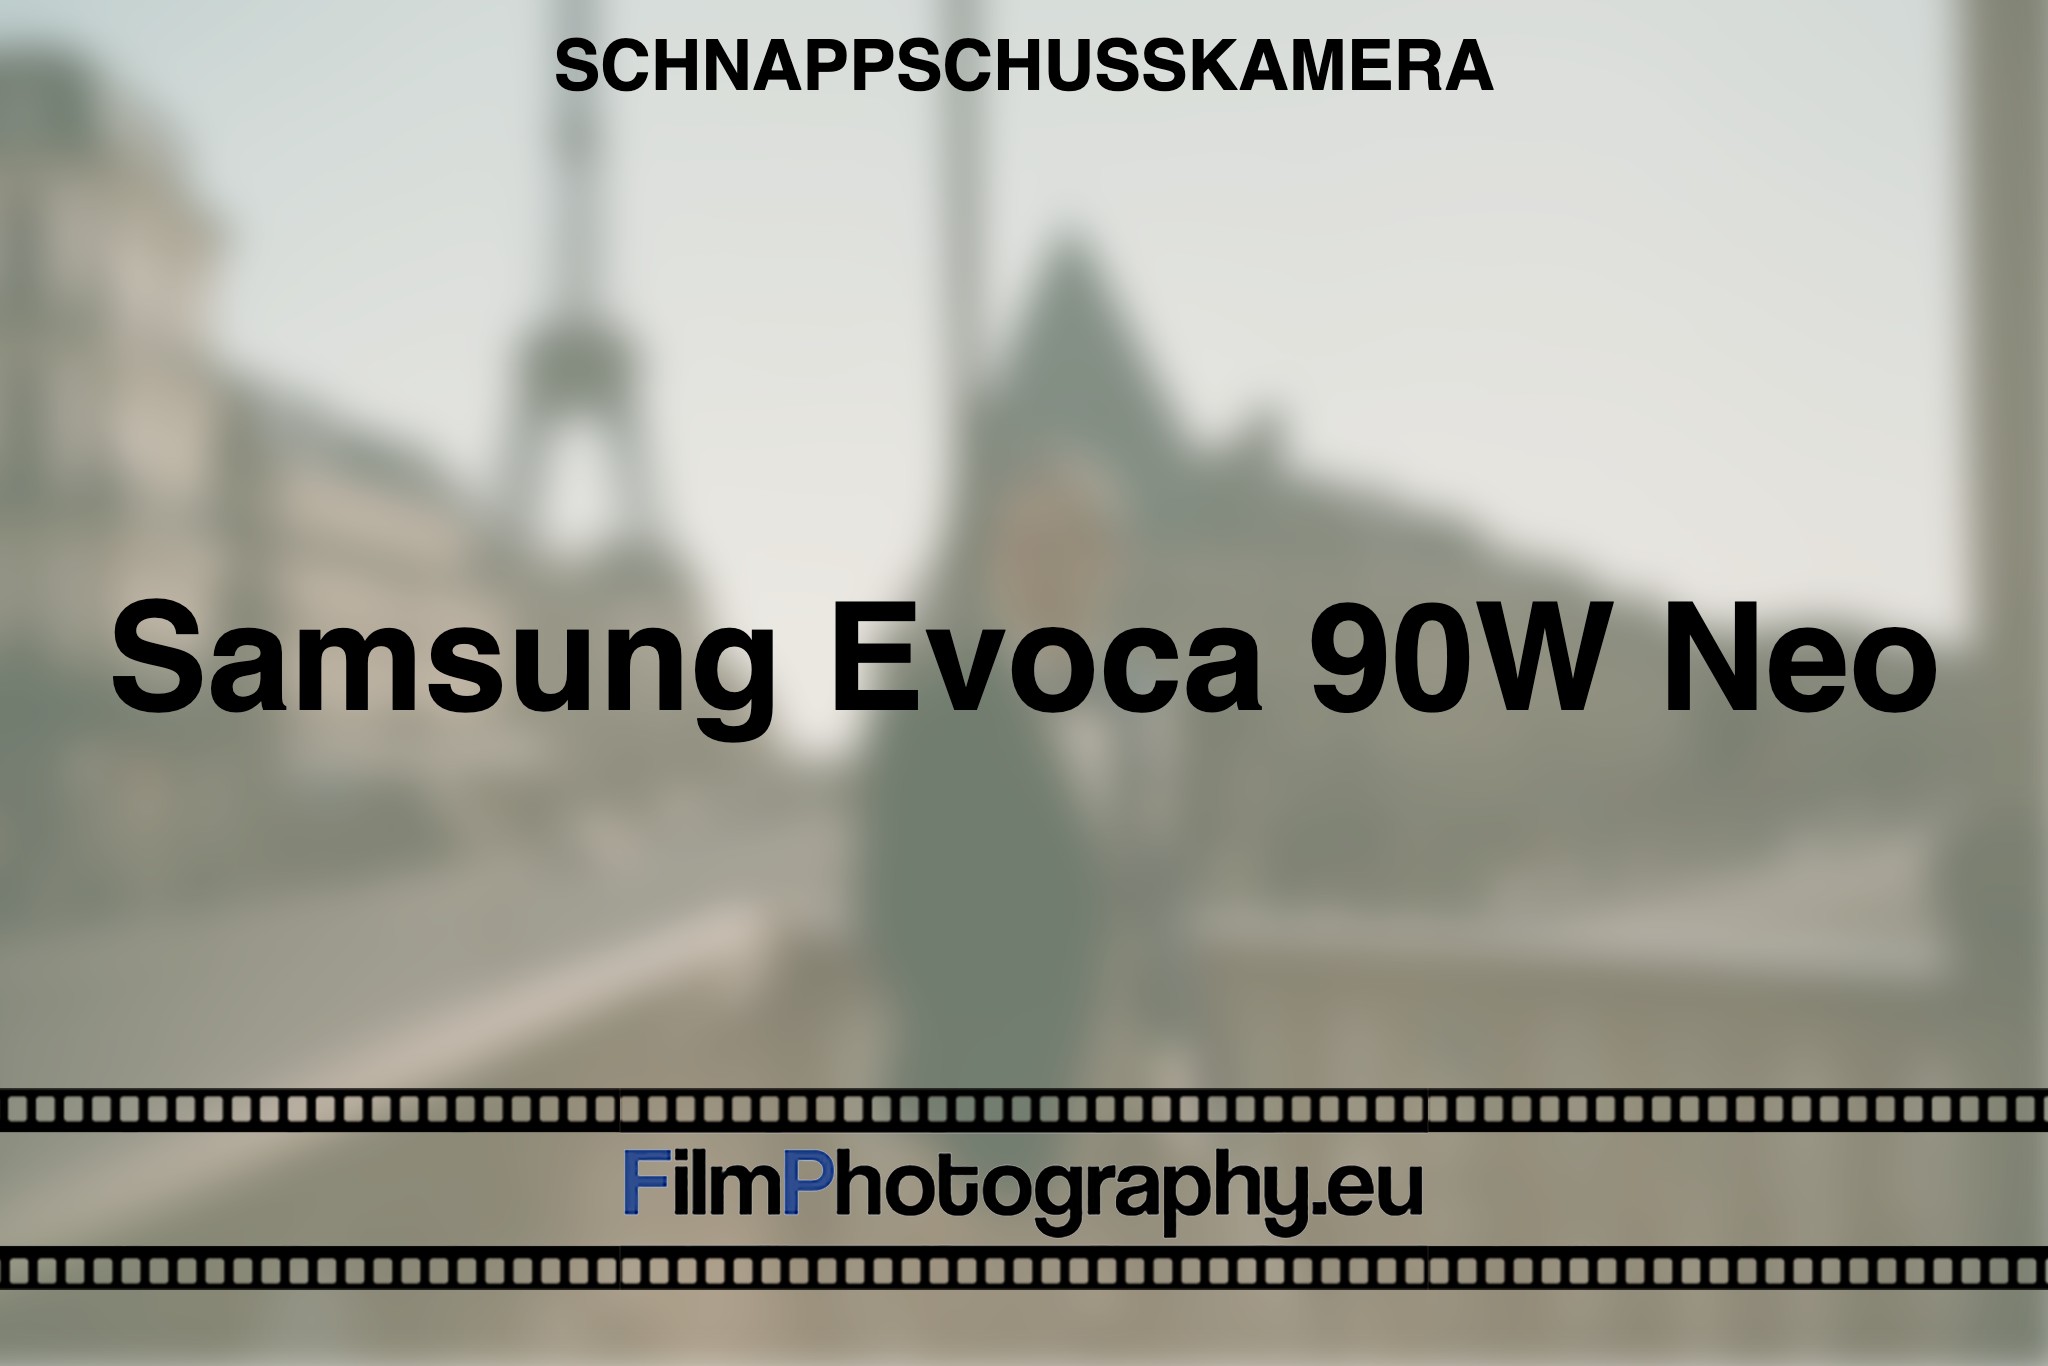 samsung-evoca-90w-neo-schnappschusskamera-bnv